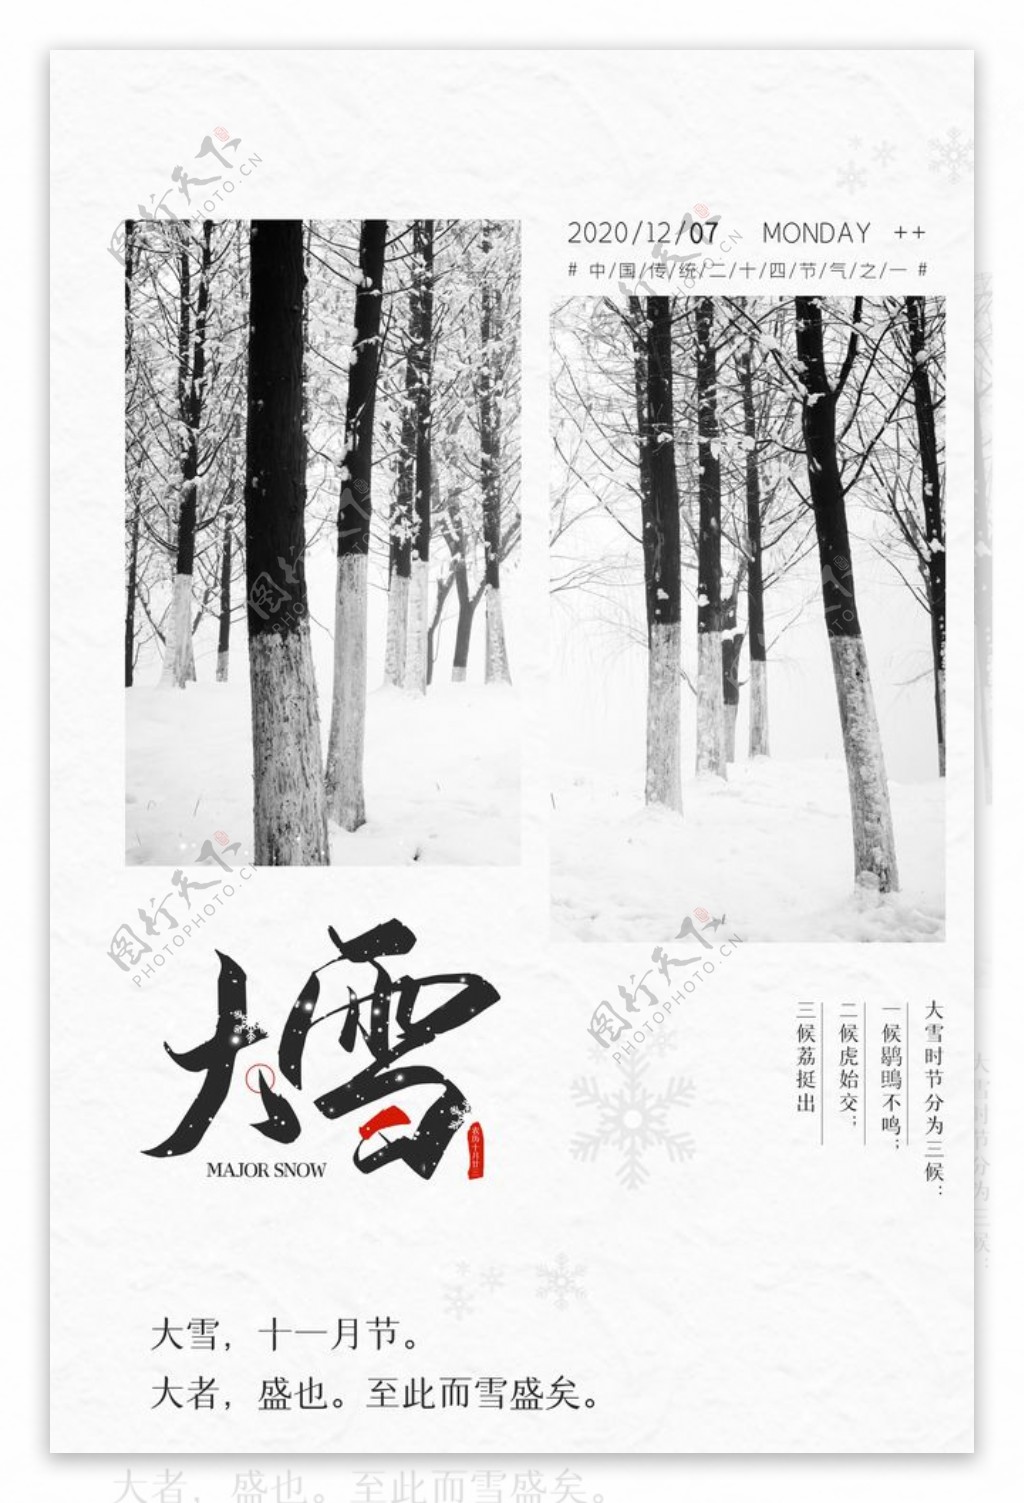 传统节日大雪灰色冬日图片